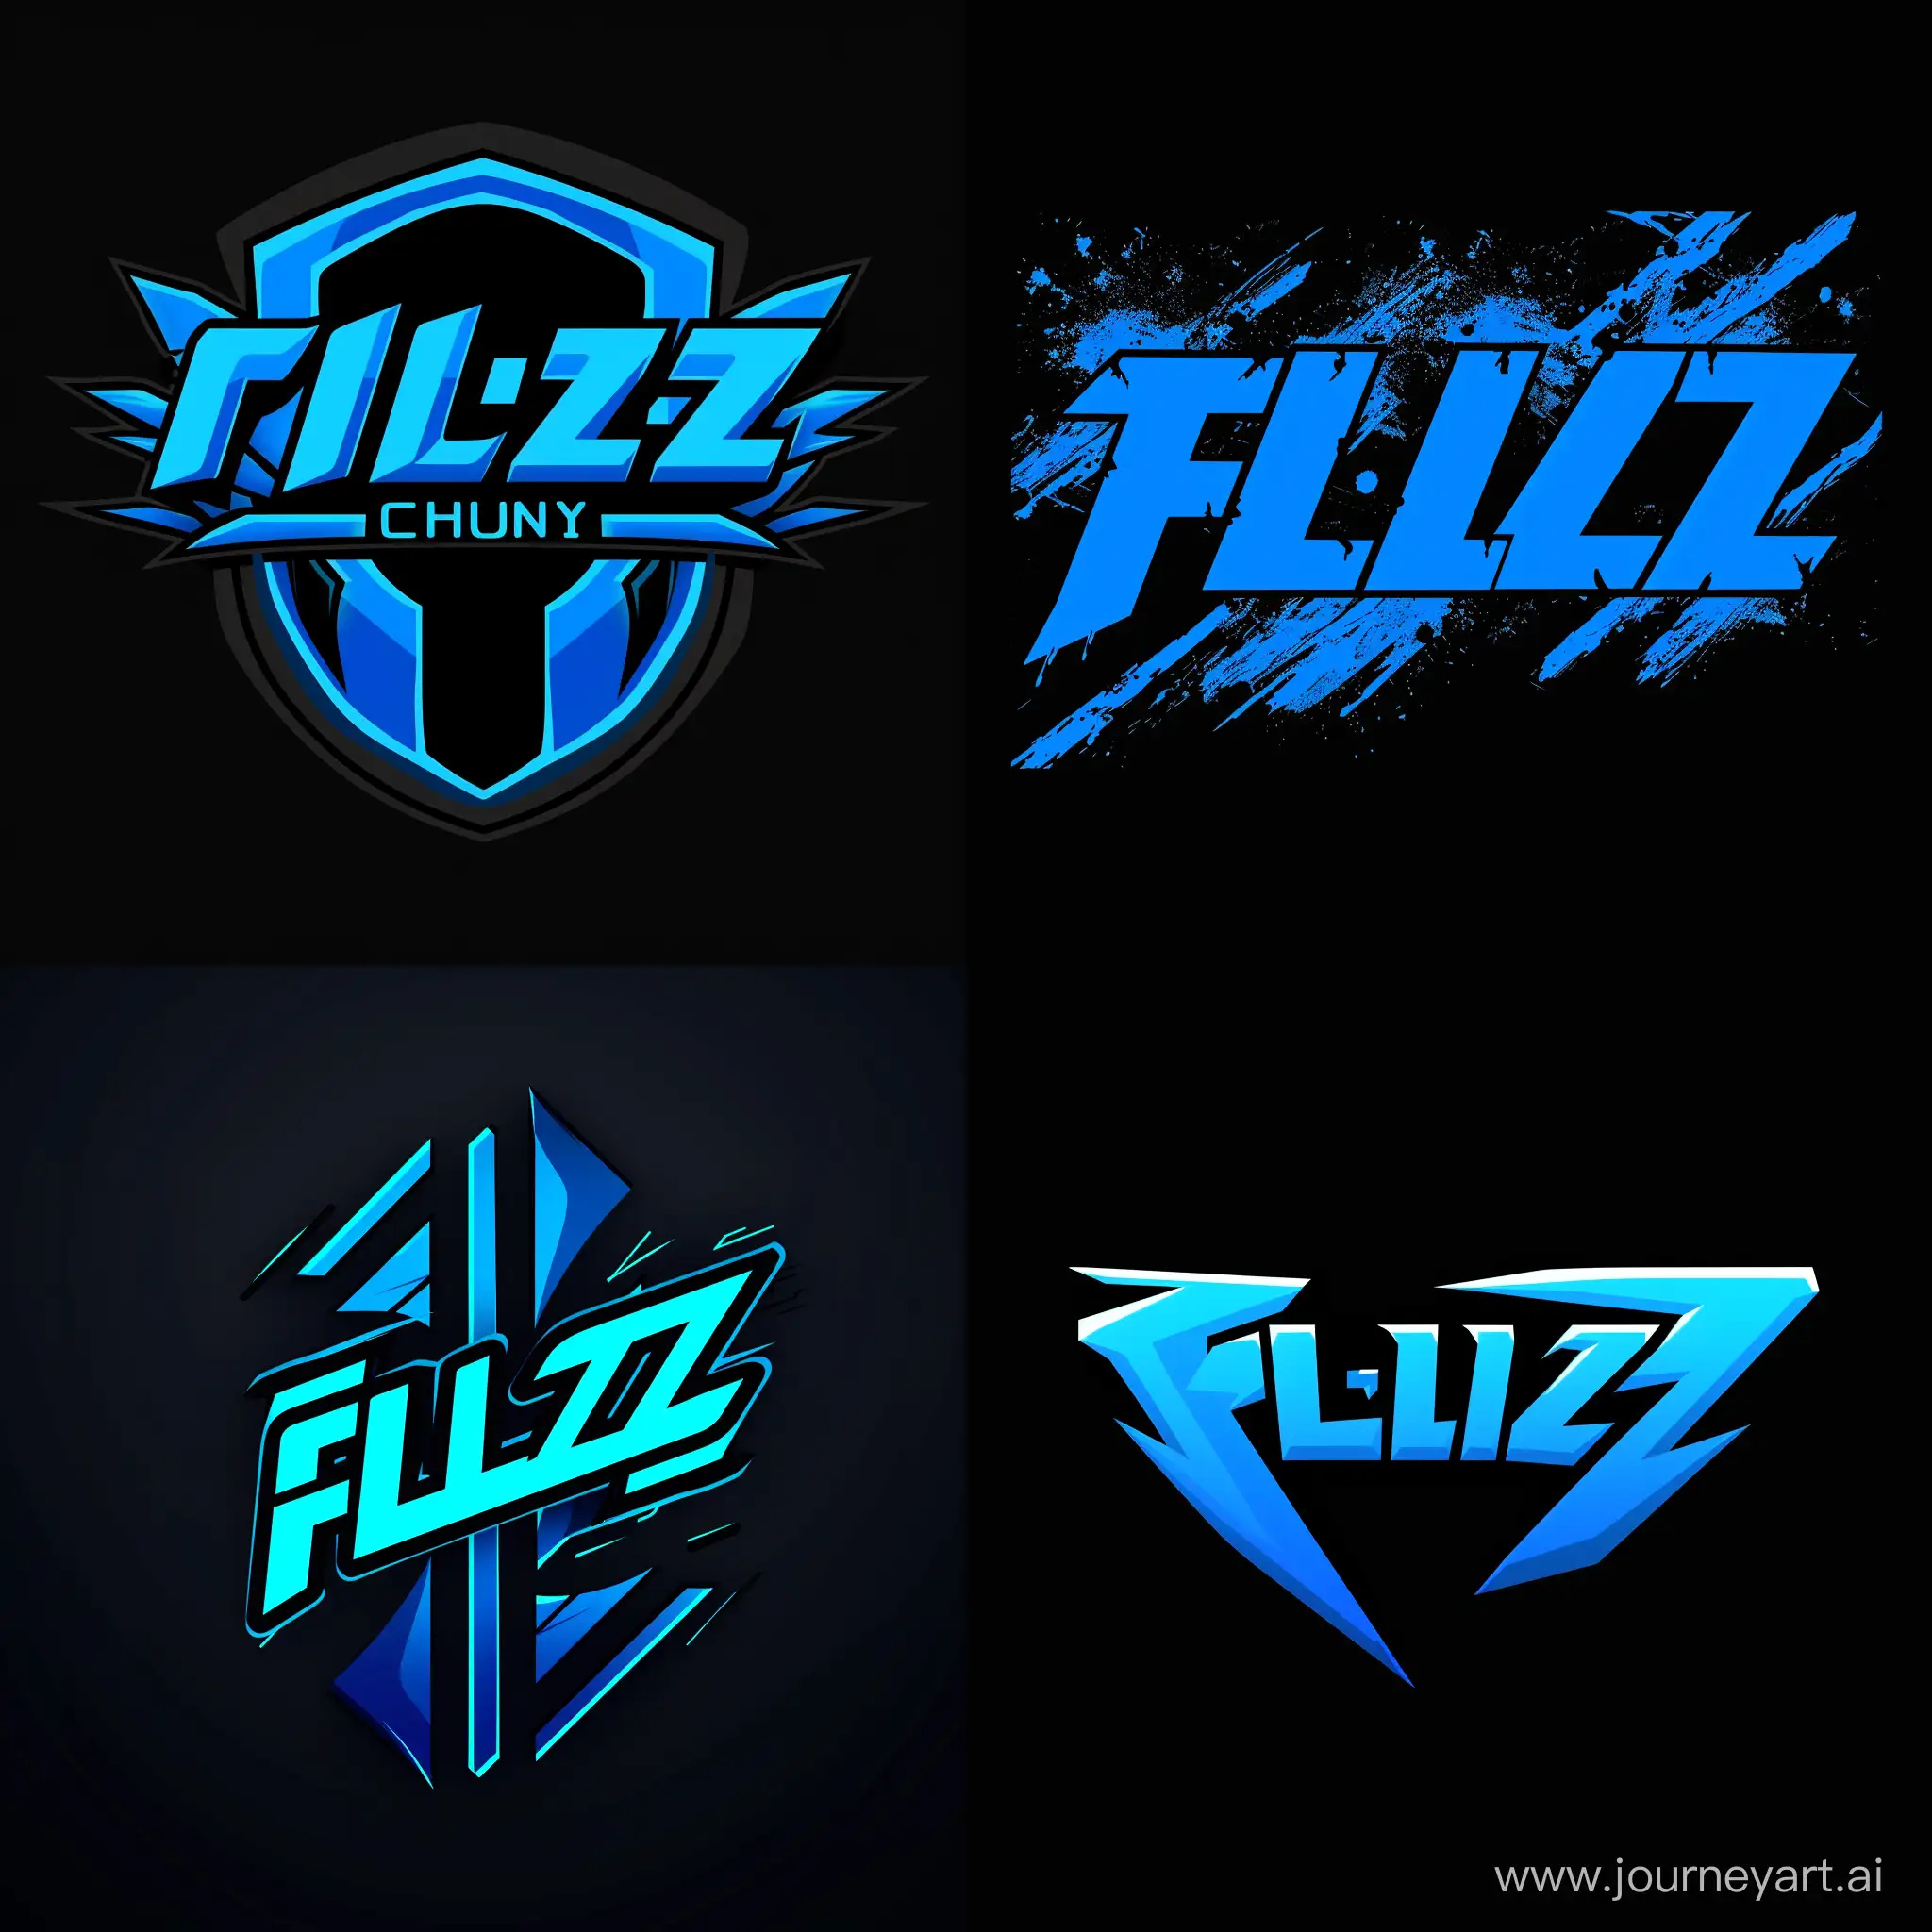 fl1zy channel logo colors: blue, black